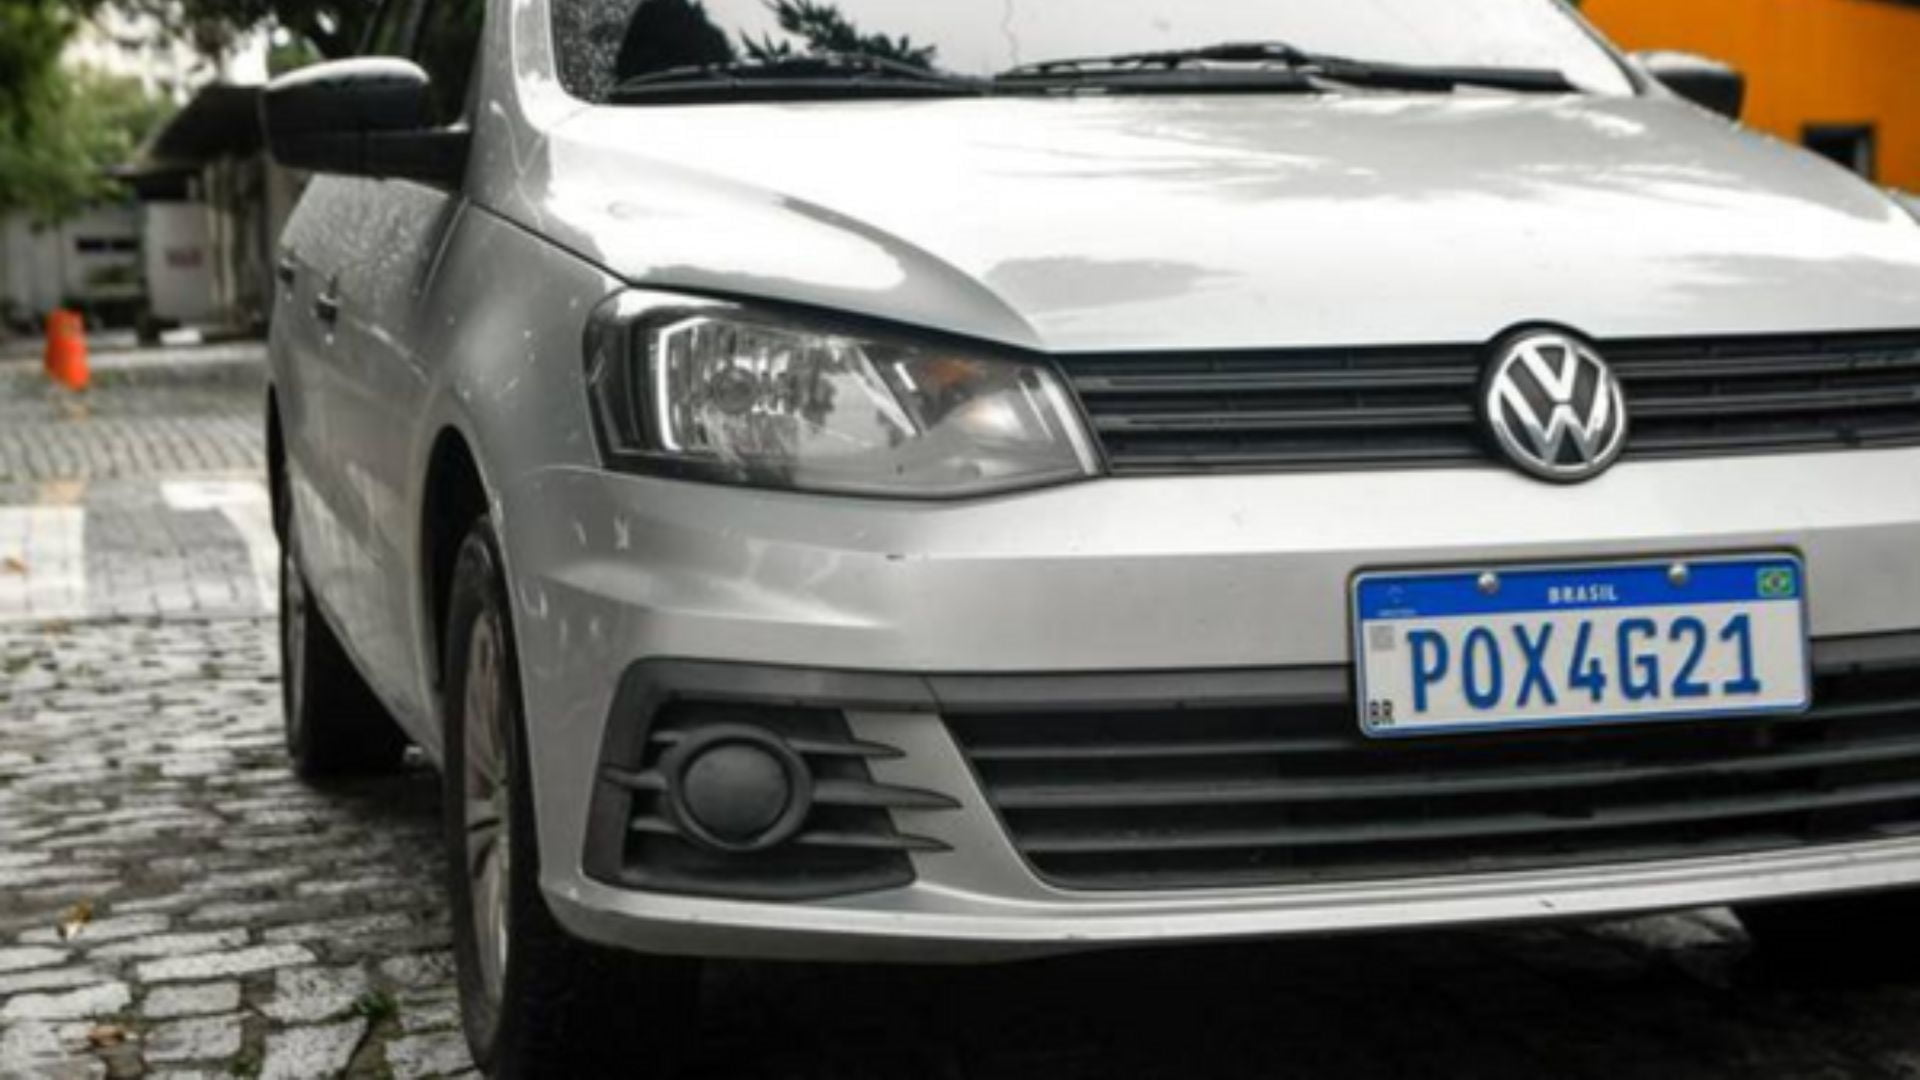 CAE aprova volta de informação sobre estado e município em placas de carros